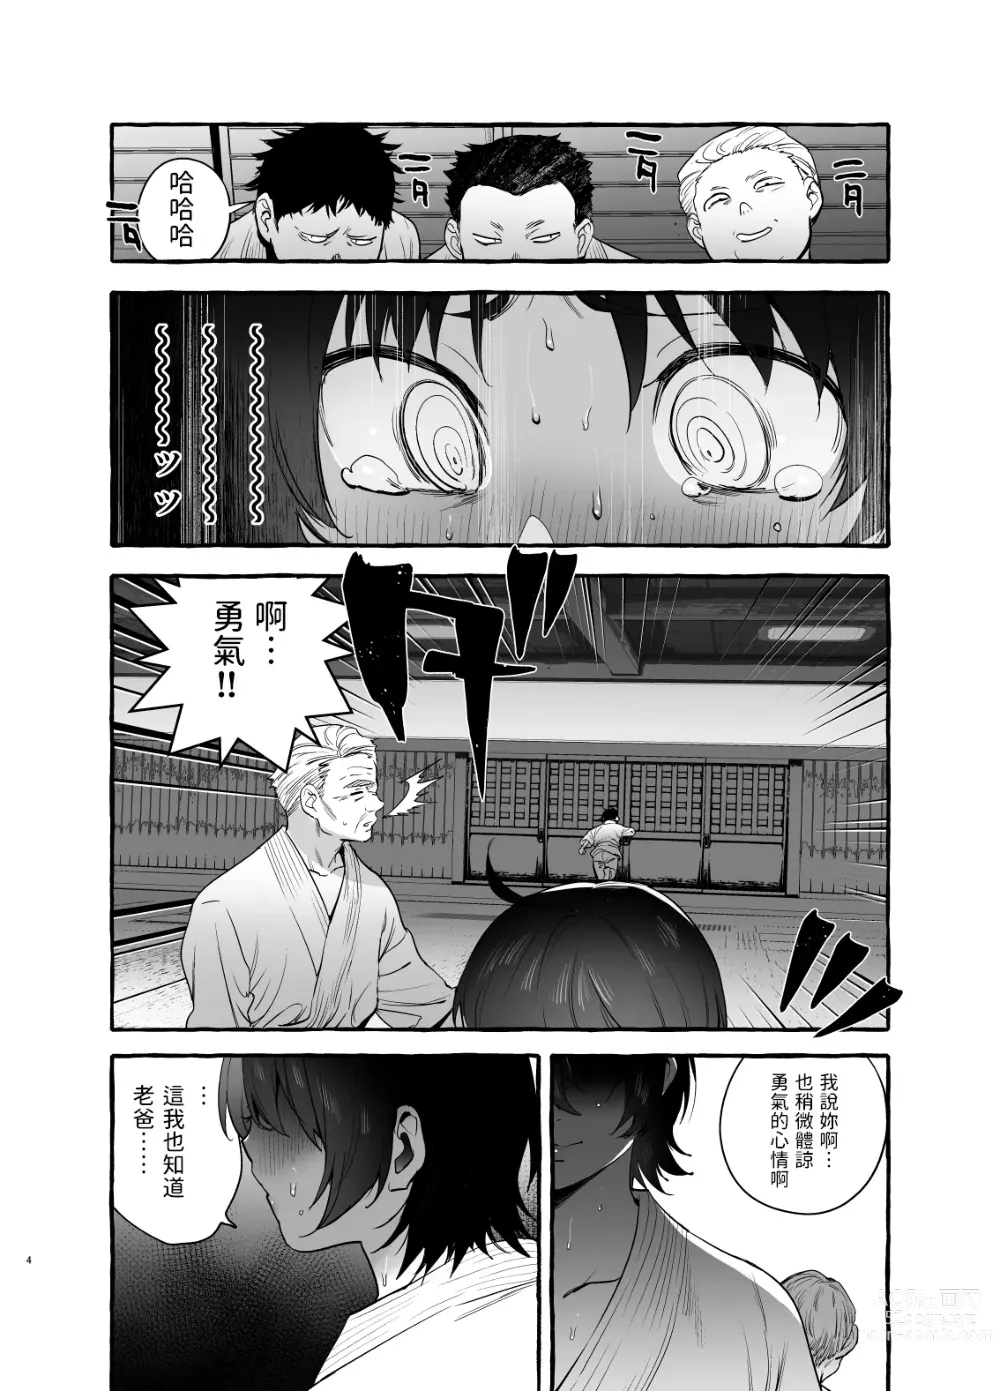 Page 5 of doujinshi Deka Tsuyo Mama wa Boku ni Amai.